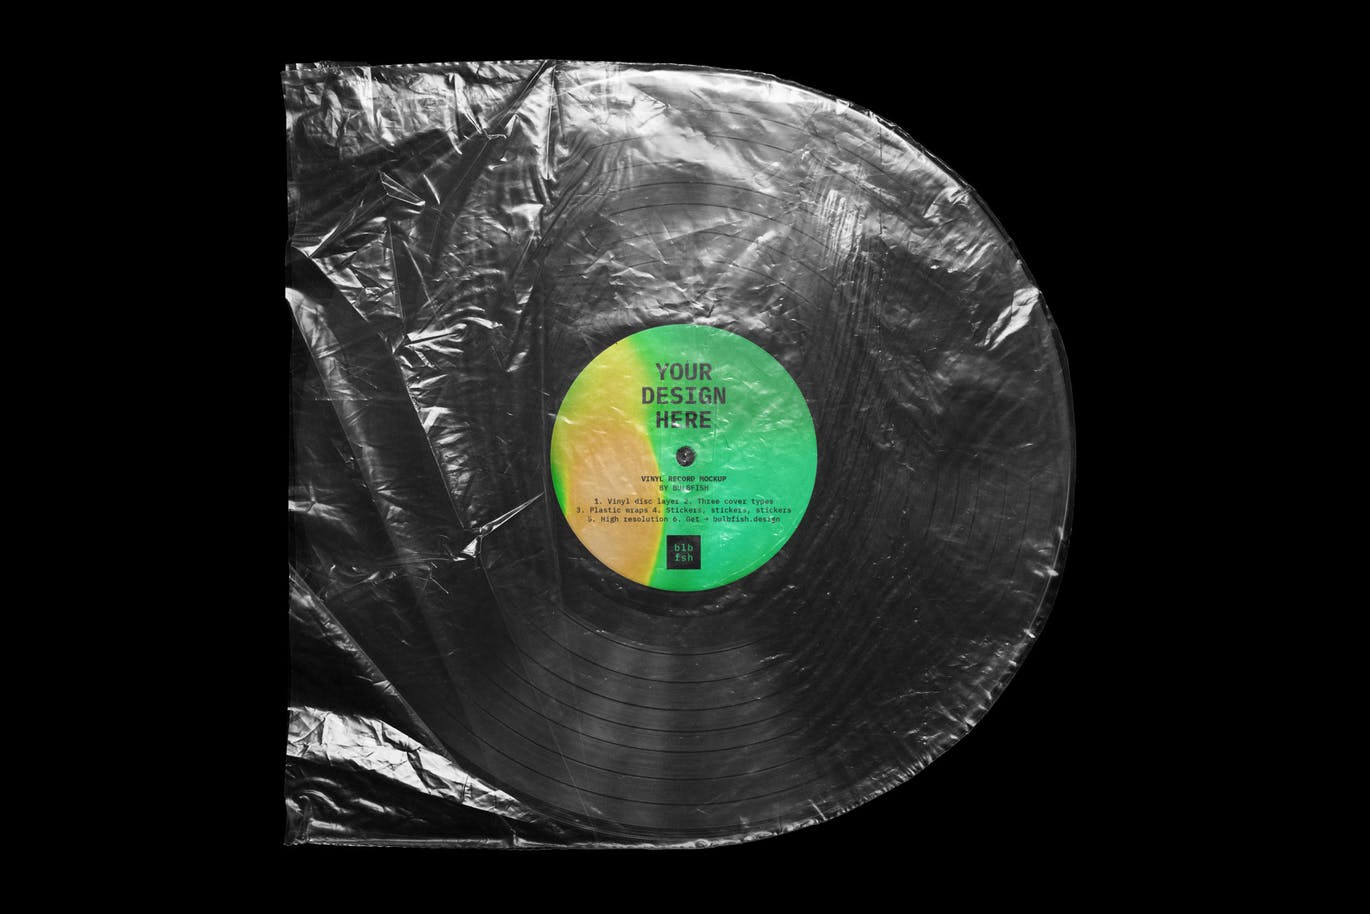 乙烯基唱片包装盒及封面设计图第一素材精选模板 Vinyl Record Mockup插图(5)